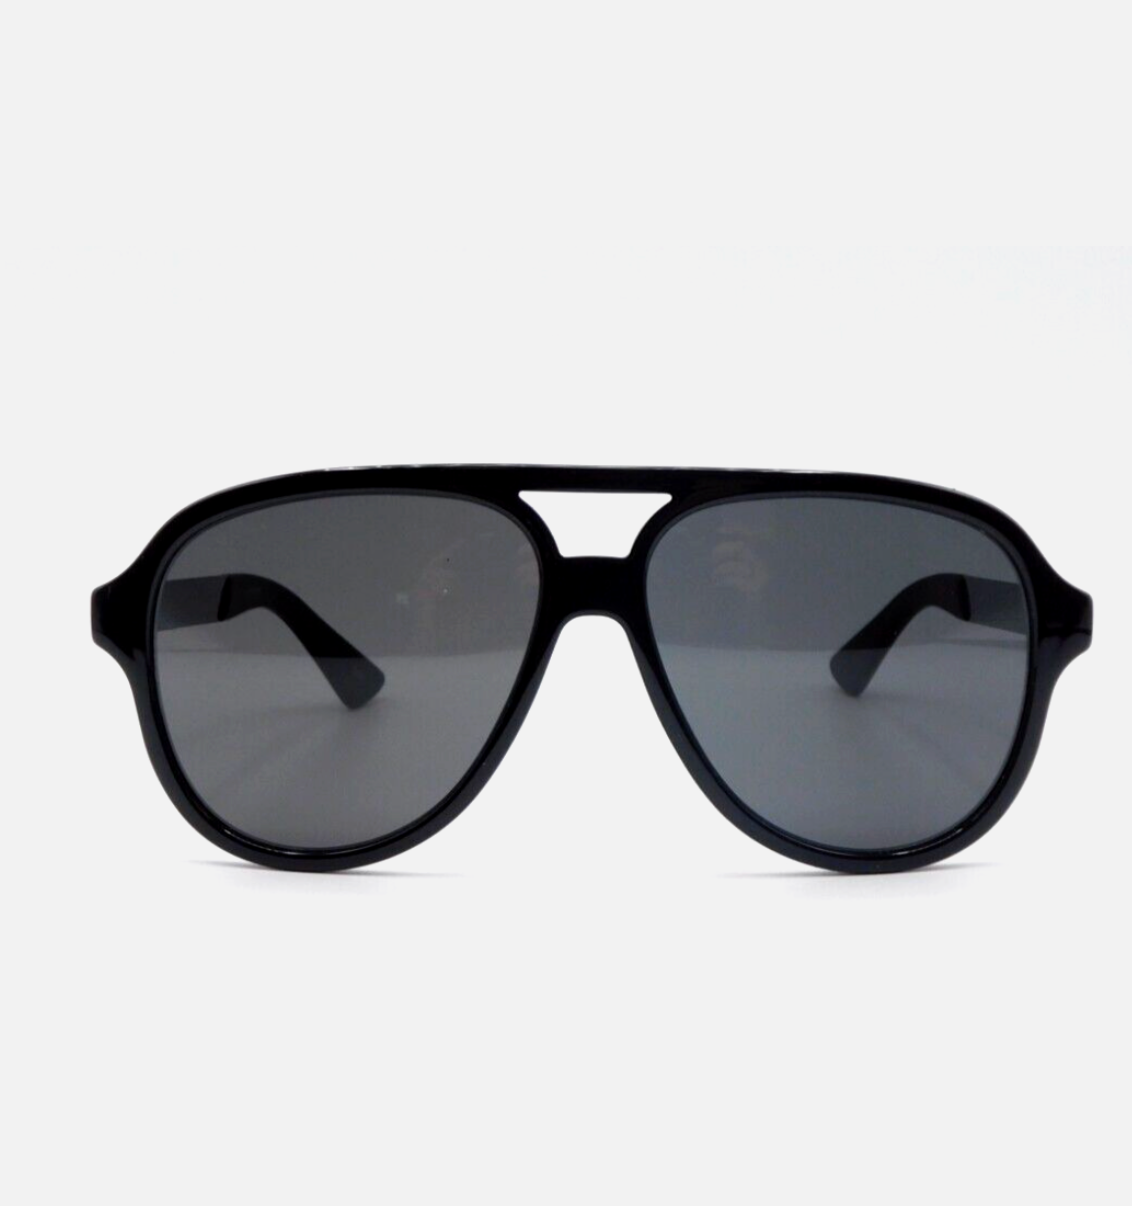 Gucci GG0688S-001 59mm New Sunglasses